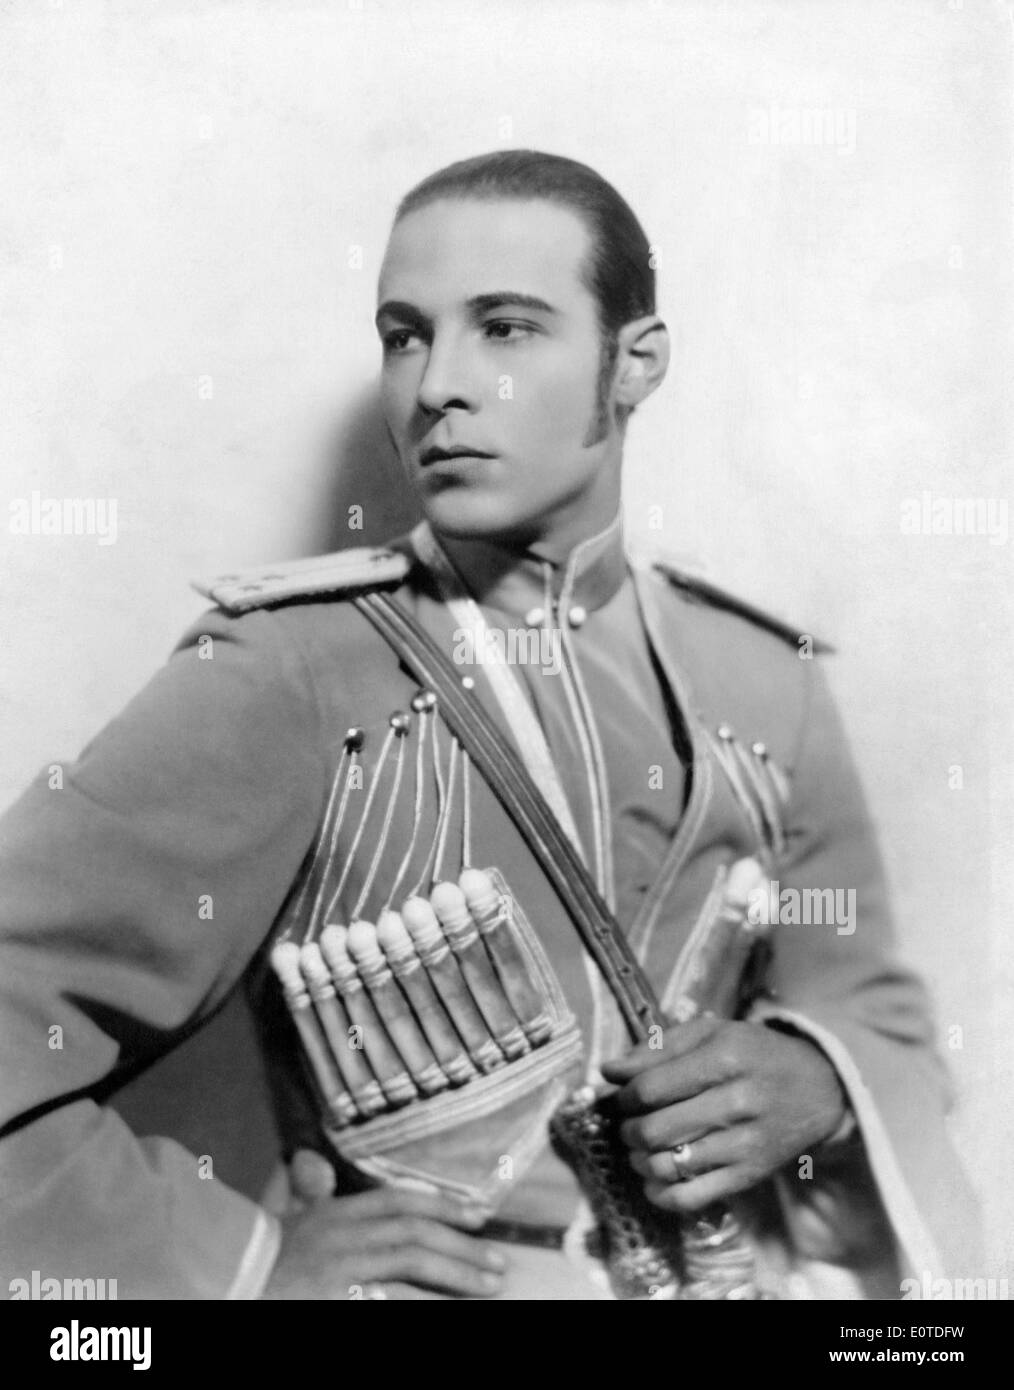 Rudolph Valentino, sur-ensemble du cinéma muet, "l'Aigle", 1925 Banque D'Images